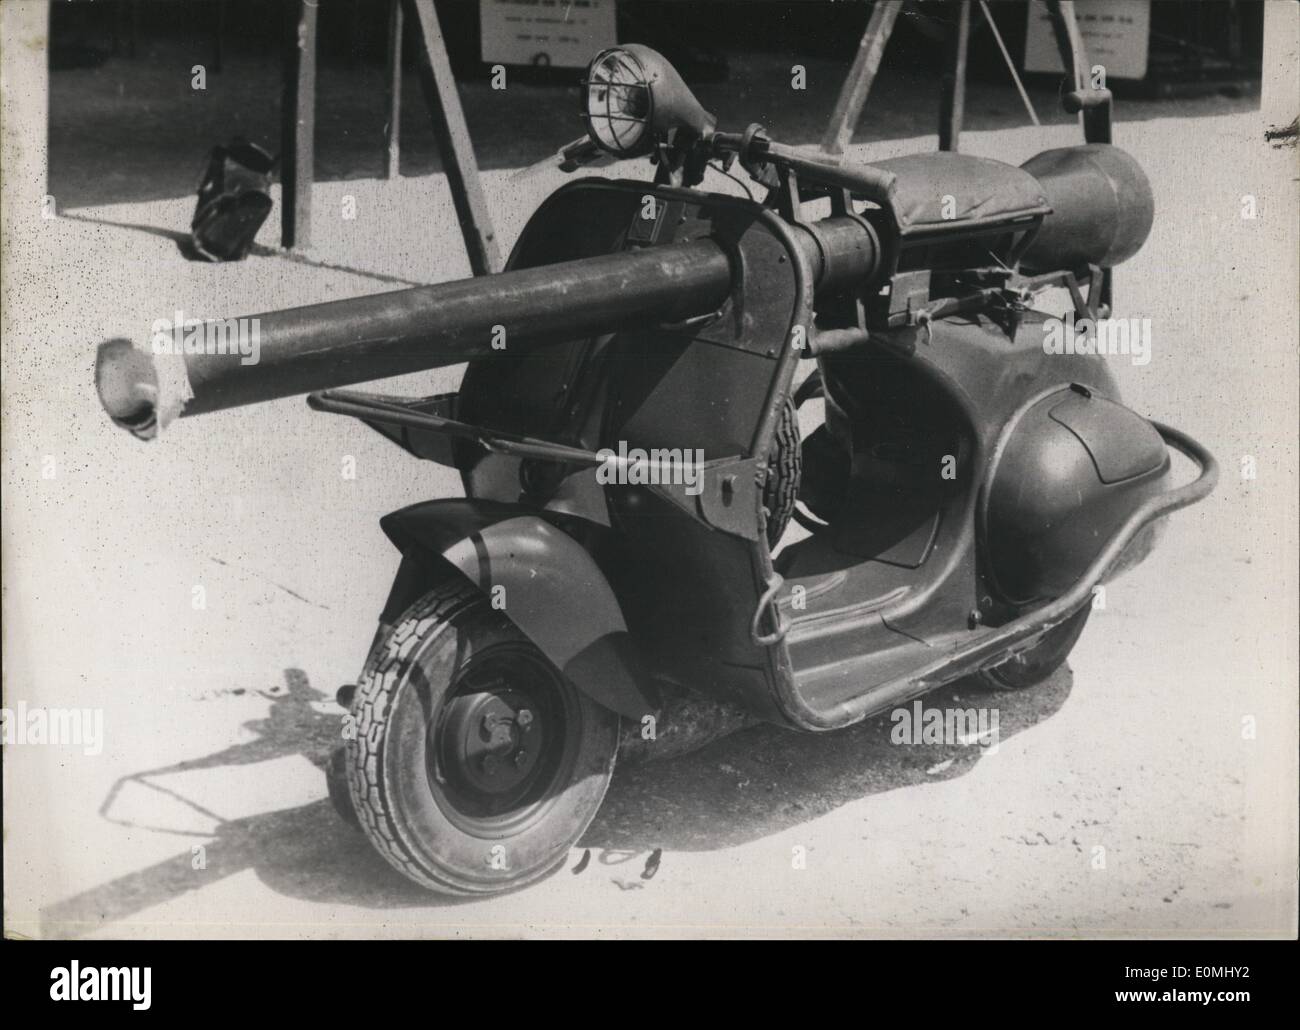 Giugno 06, 1955 - un ''Nuovo Look '' Pistola : un 75 Pistola francese montato su uno scooter è la più recente conseguimento dell esercito francese tecnici. La pistola mobile che può essere spostato da un luogo ad un altro in corrispondenza di una velocità media di 40 km/h. è seguita da uno o più scooter trasportare munizioni. Foto Stock